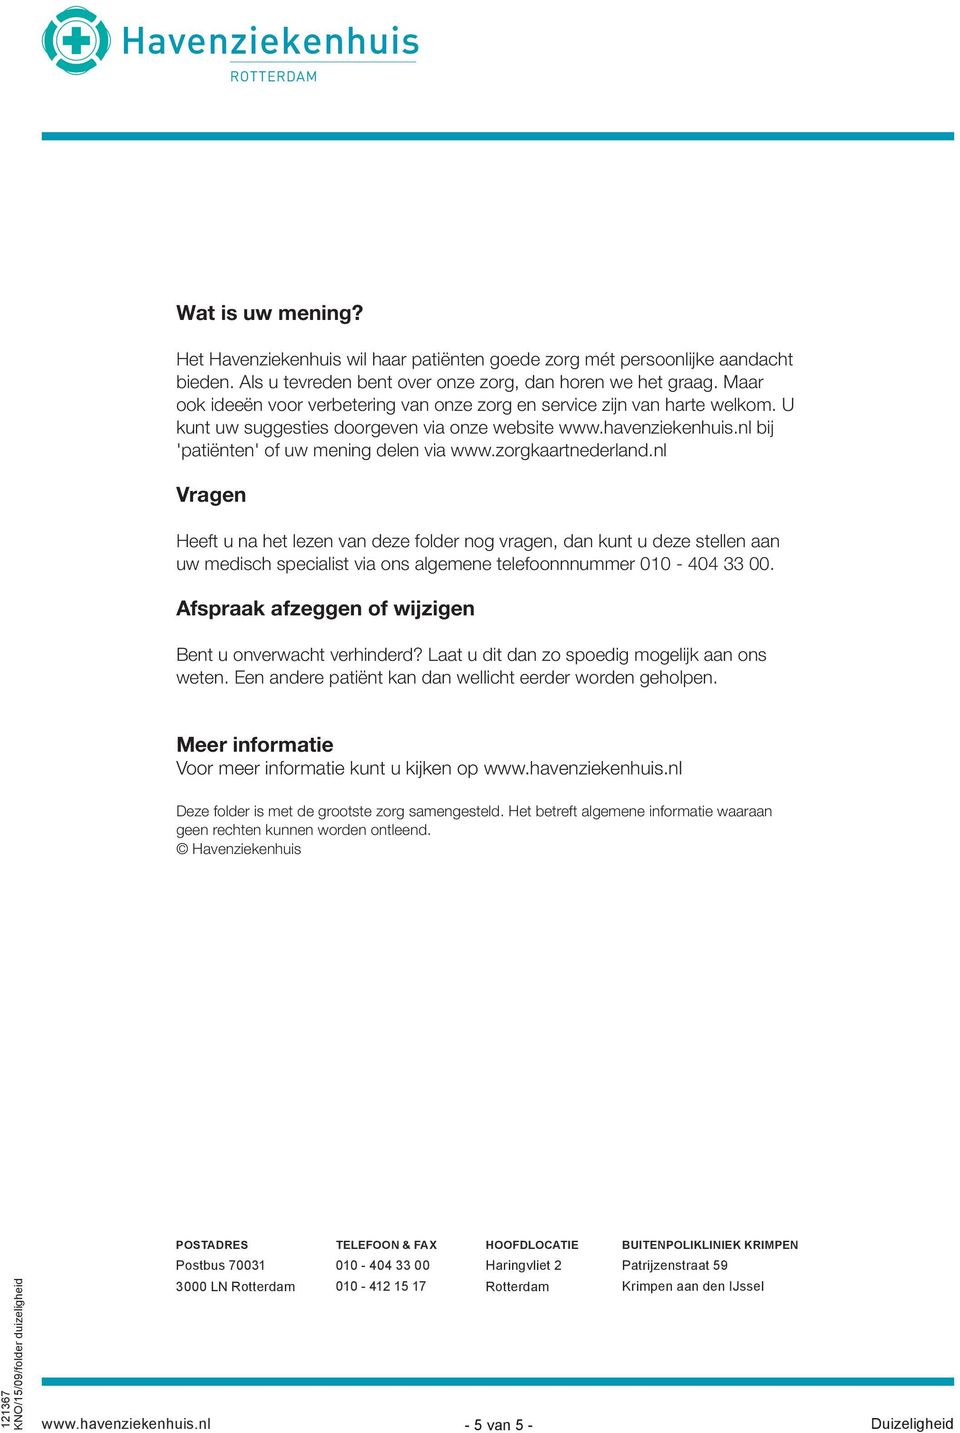 zorgkaartnederland.nl Vragen Heeft u na het lezen van deze folder nog vragen, dan kunt u deze stellen aan uw medisch specialist via ons algemene telefoonnnummer 010-404 33 00.